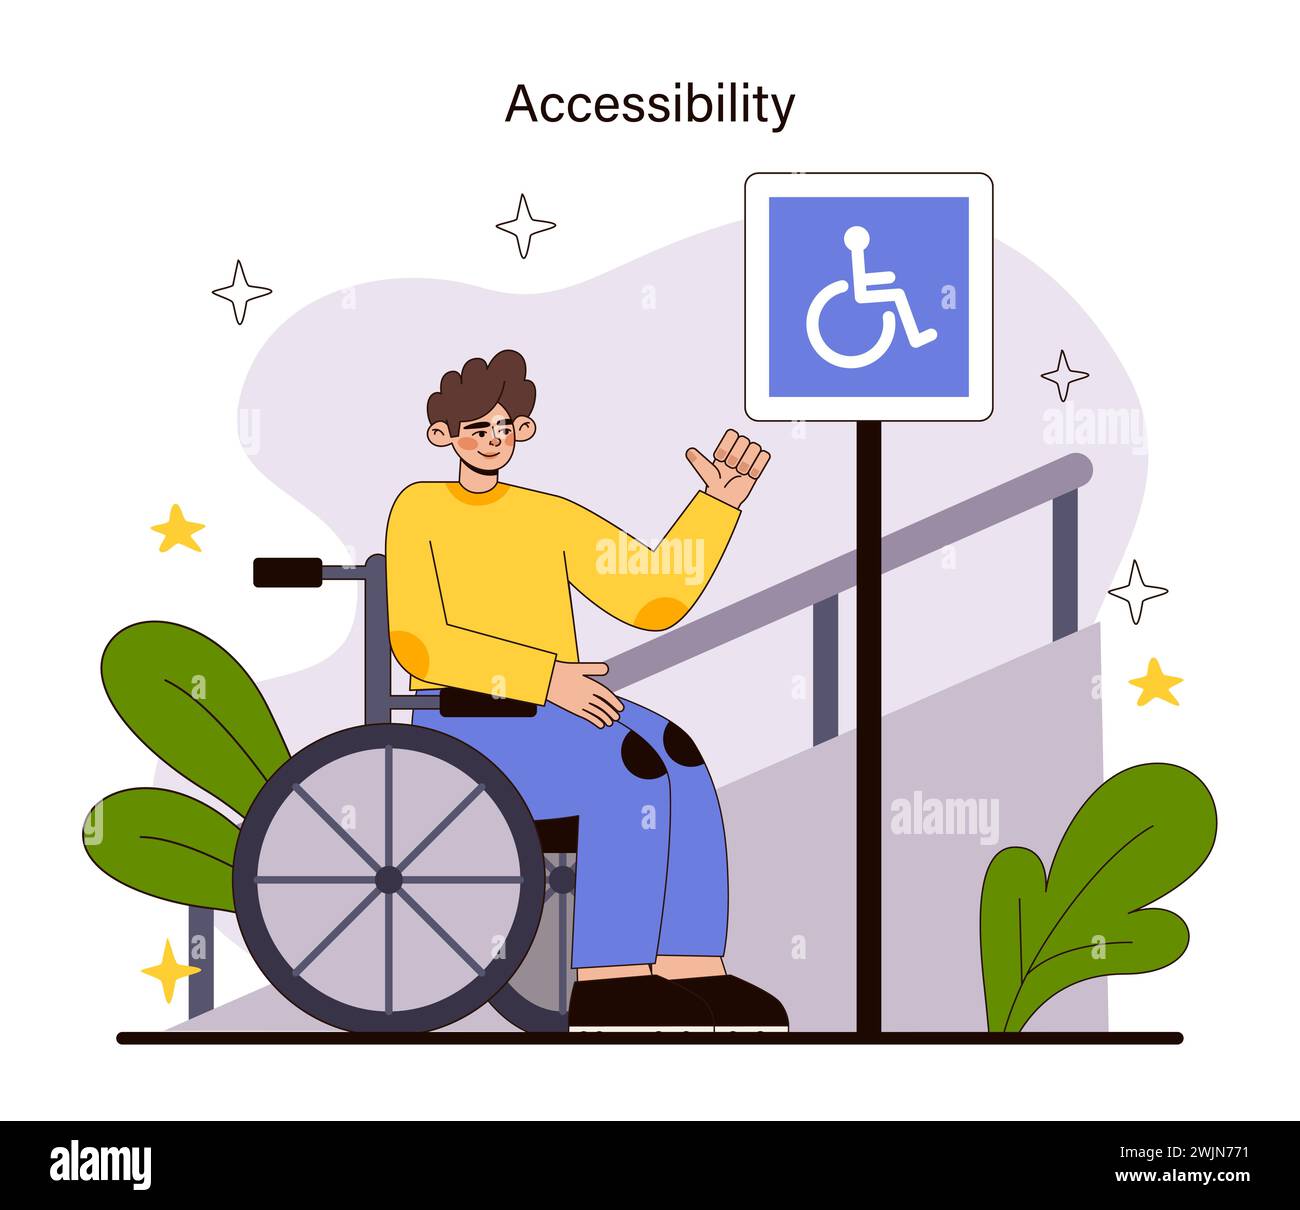 Concetto di accessibilità. Una persona su sedia a rotelle saluta la giornata con ottimismo vicino a un cartello di accessibilità, raffigurante la libera circolazione e spazi pubblici inclusivi. Illustrazione vettoriale piatta. Illustrazione Vettoriale